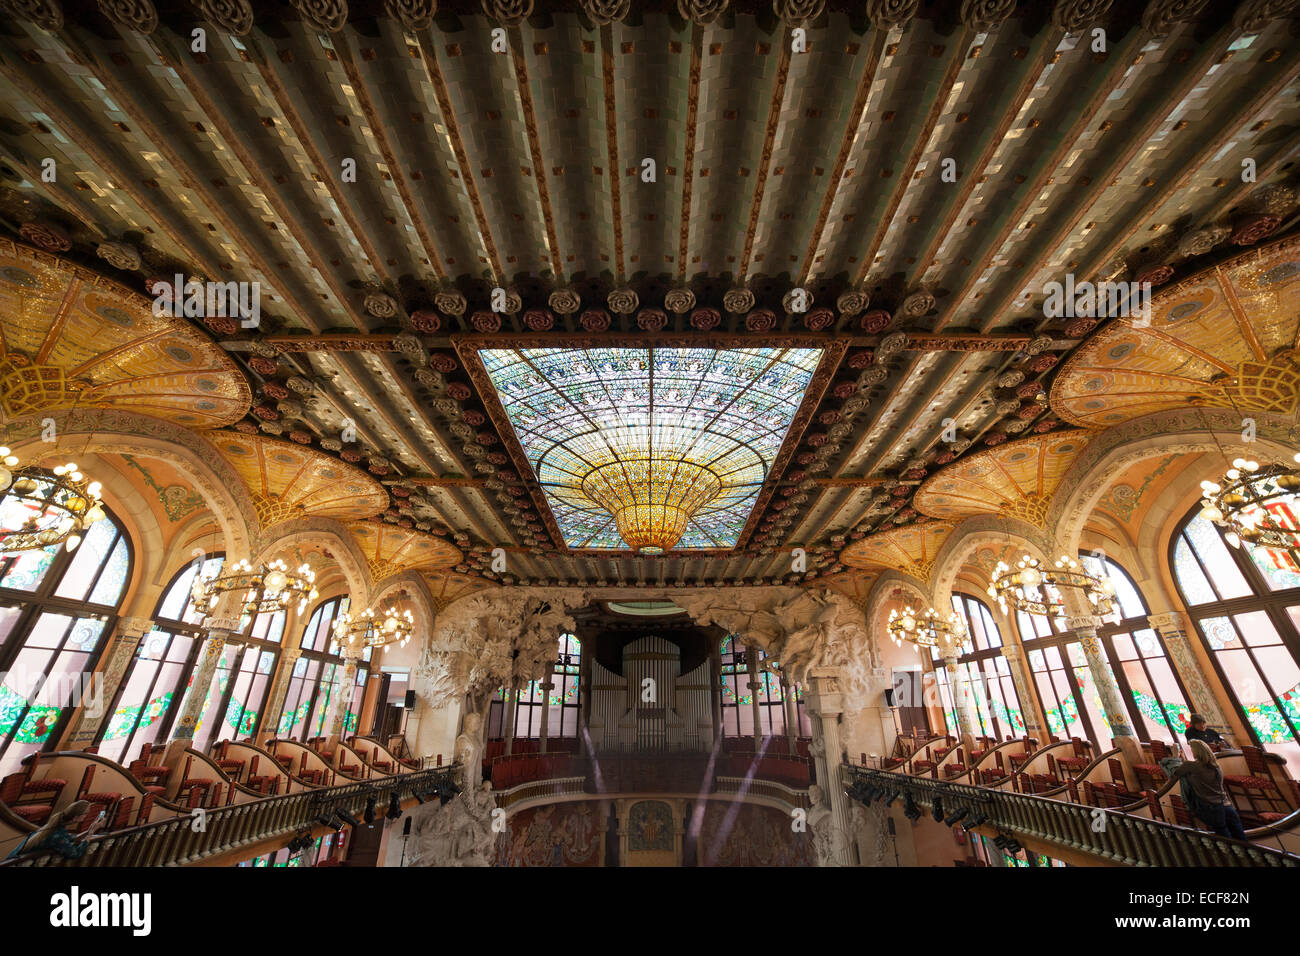 Avec puits de lumière au plafond, Palais de la musique catalane (Palau de la Musica Catalana) intérieur à Barcelone, Catalogne, Espagne. Banque D'Images